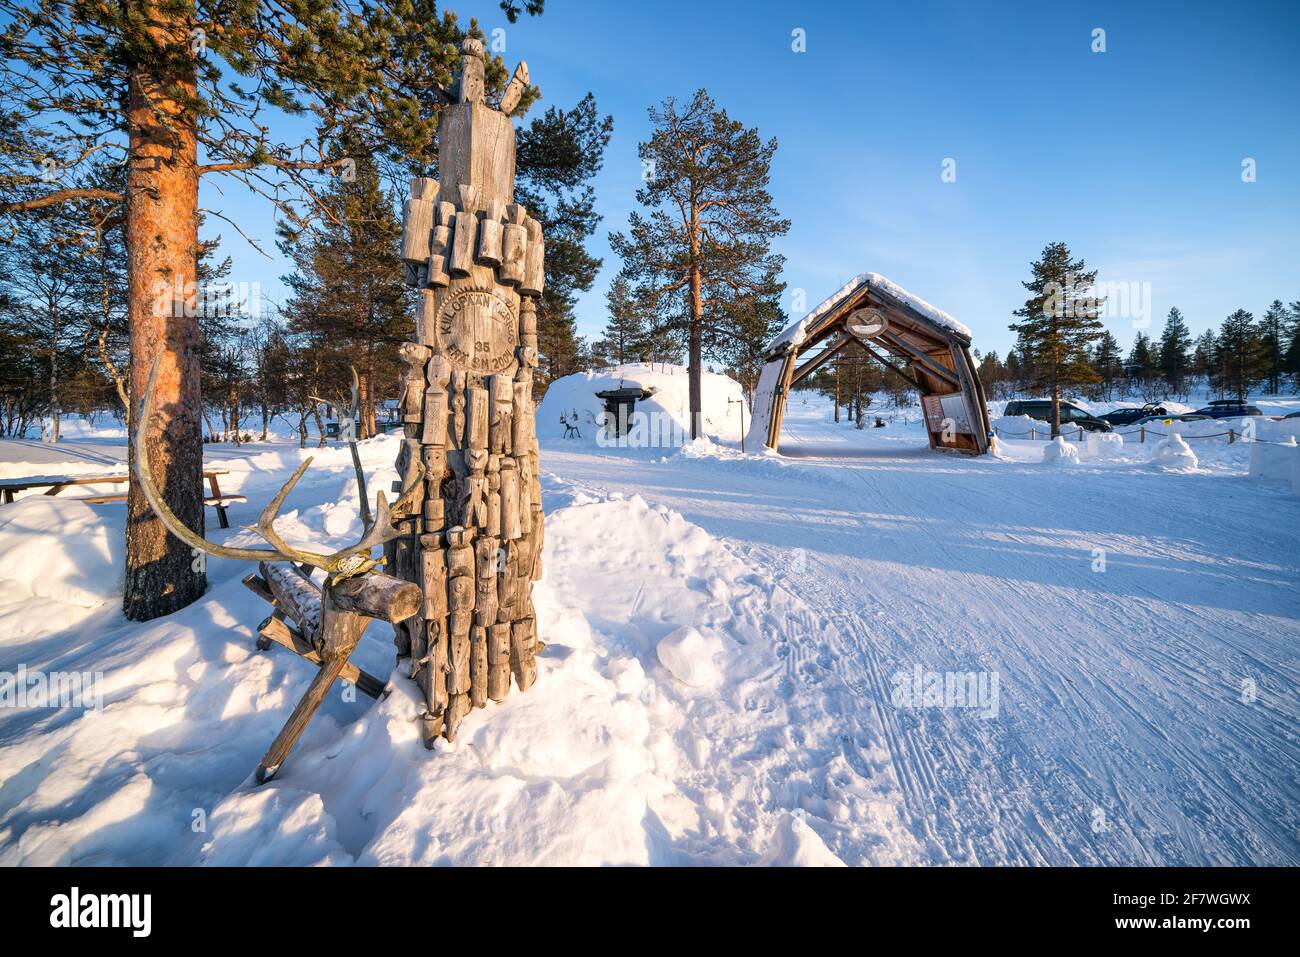 At Kiilopää ski and adventure center, Sodankylä, Lapland, Finland Stock Photo